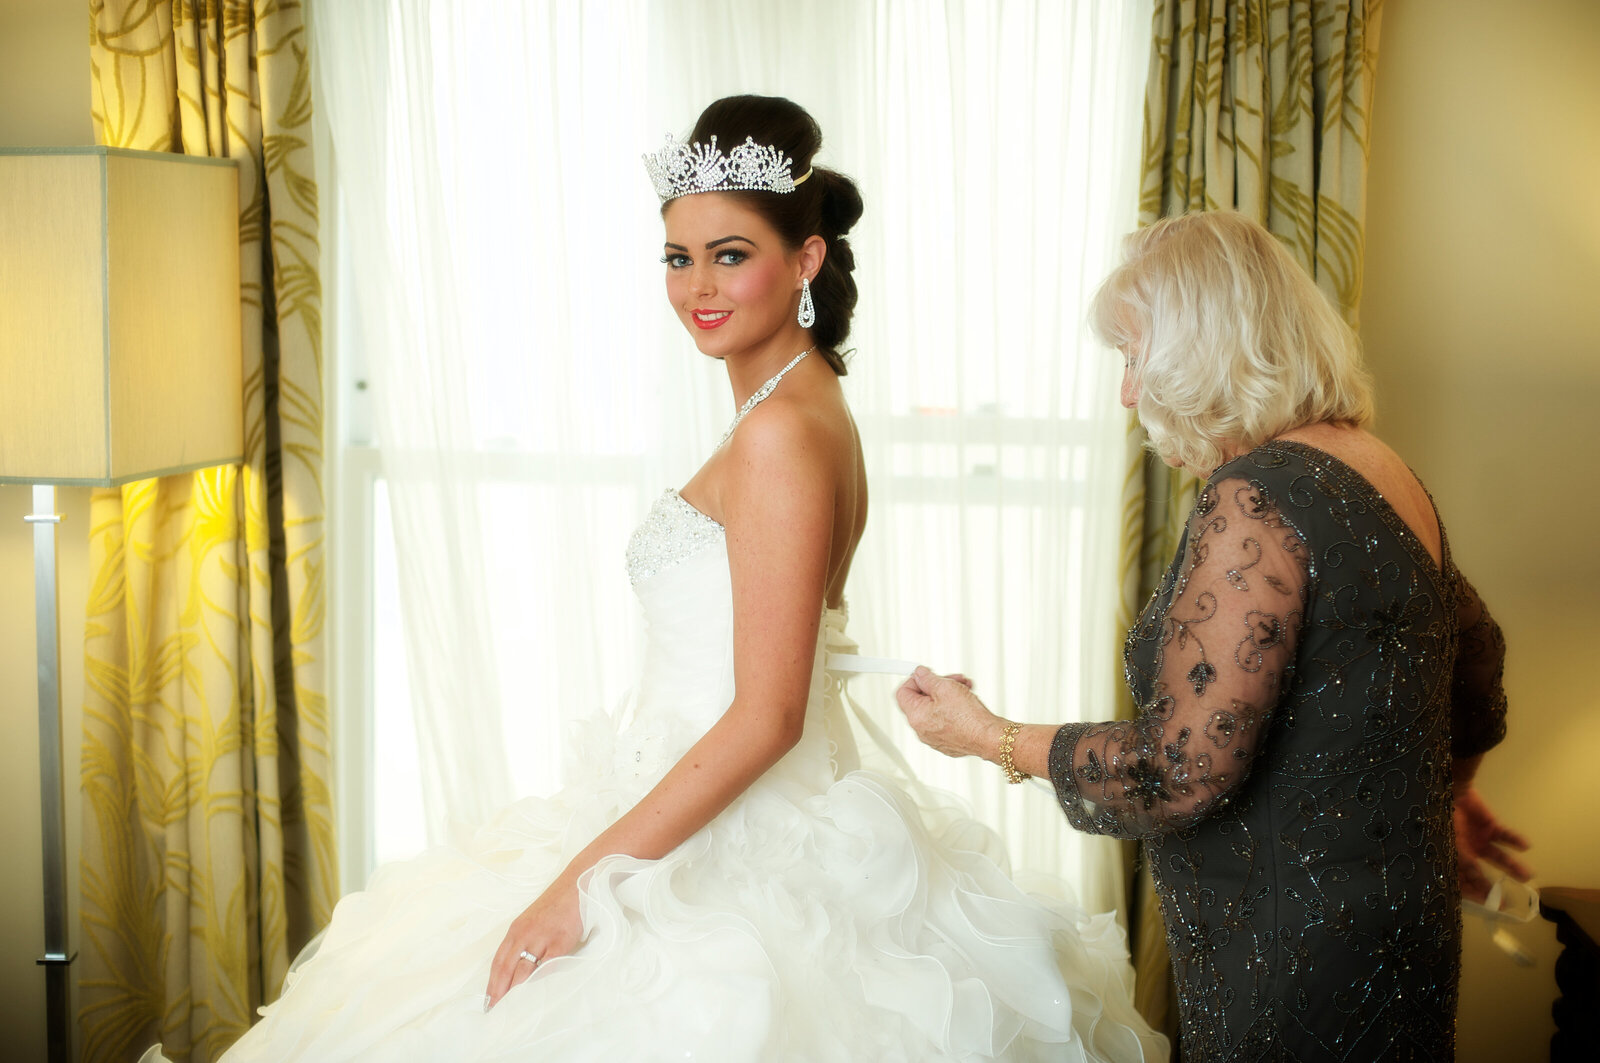 Bride doing up back of dress